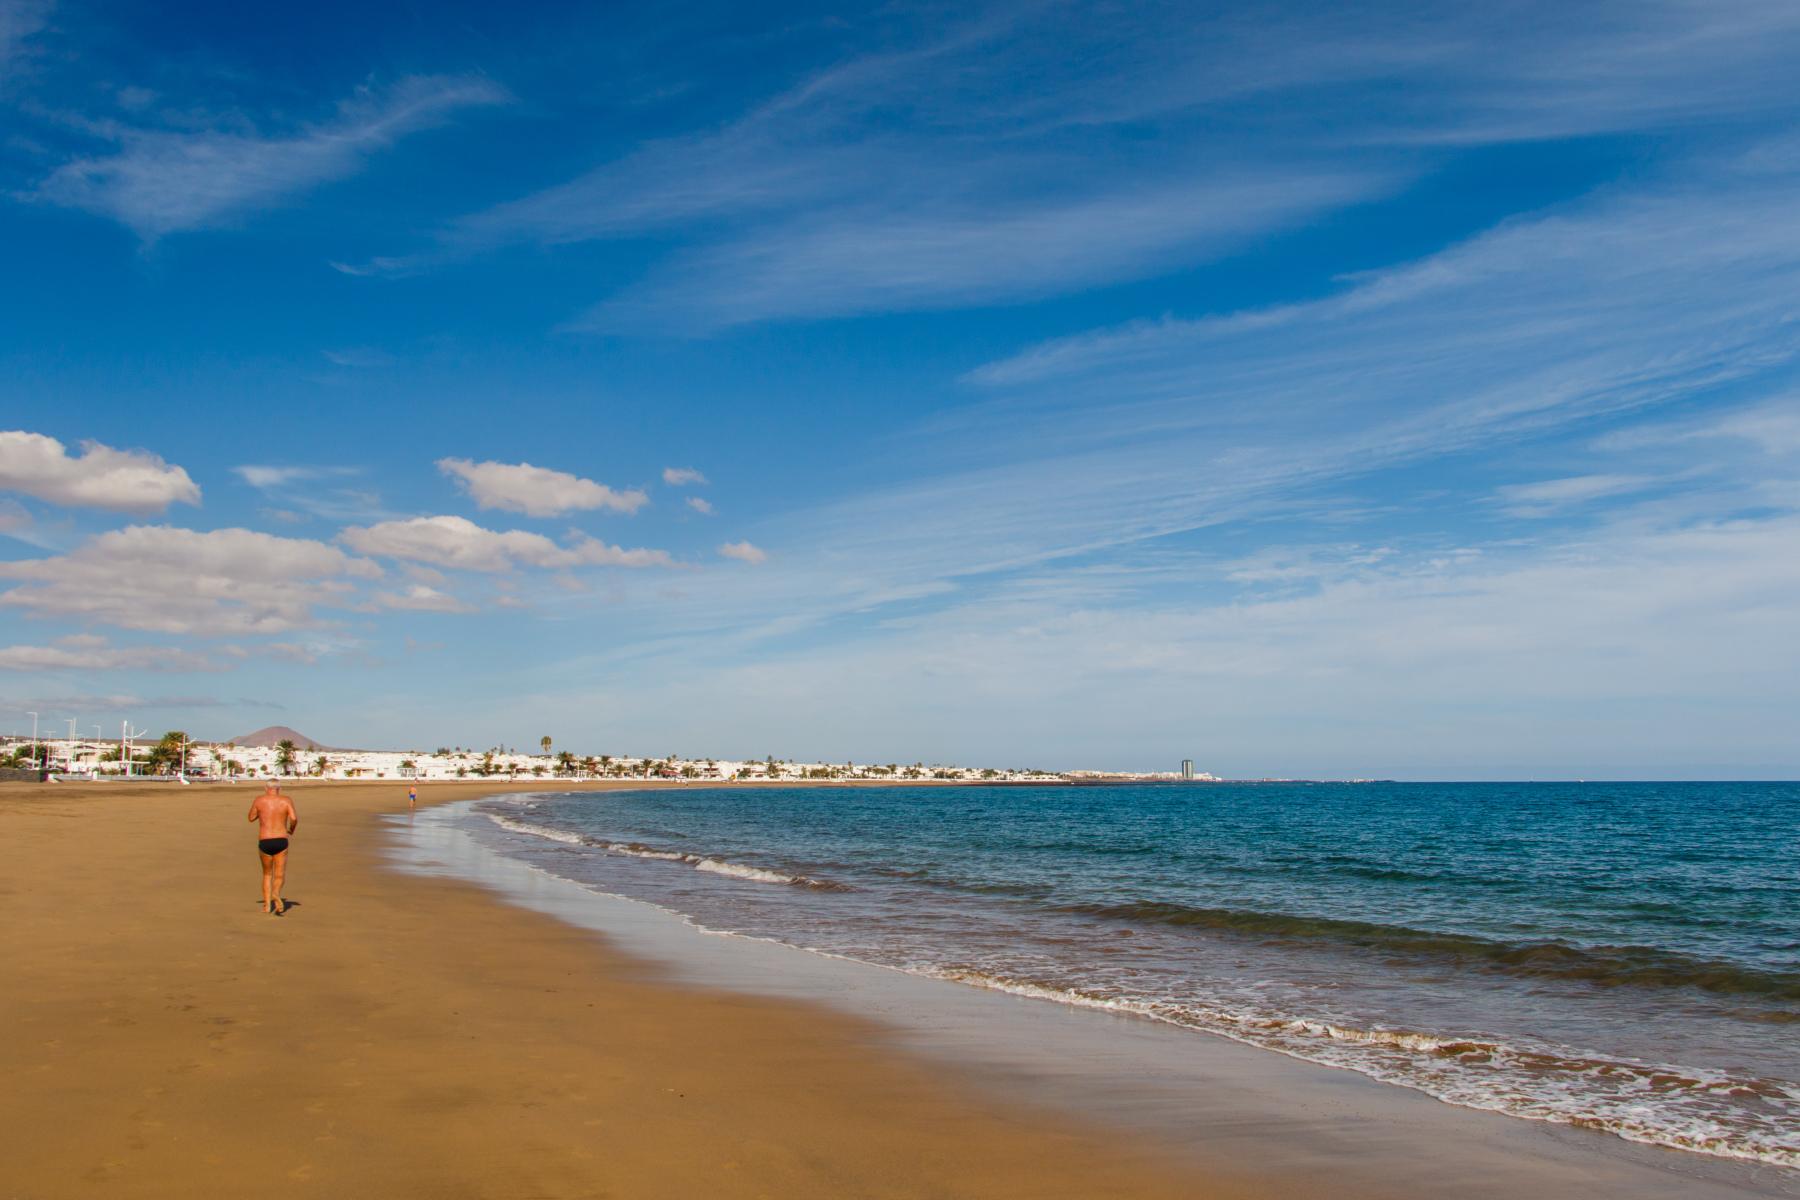 Plaża Guacimeta, nie do pomyślenia widok z relaksującego piasku